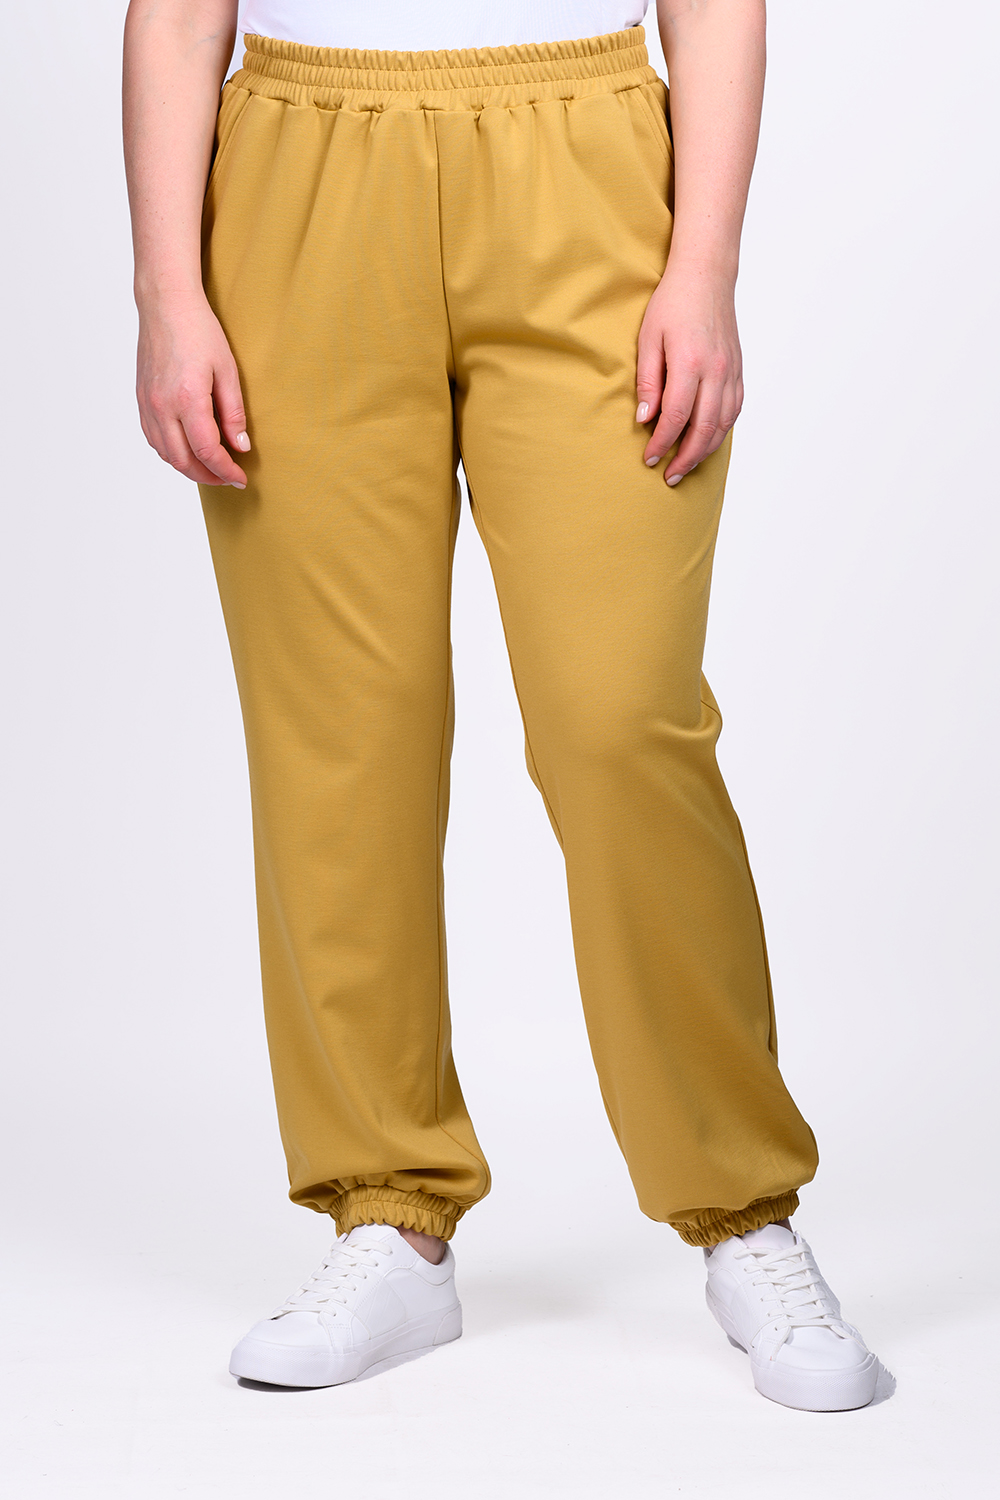 Спортивные брюки женские SVESTA P463 желтые 52 RU